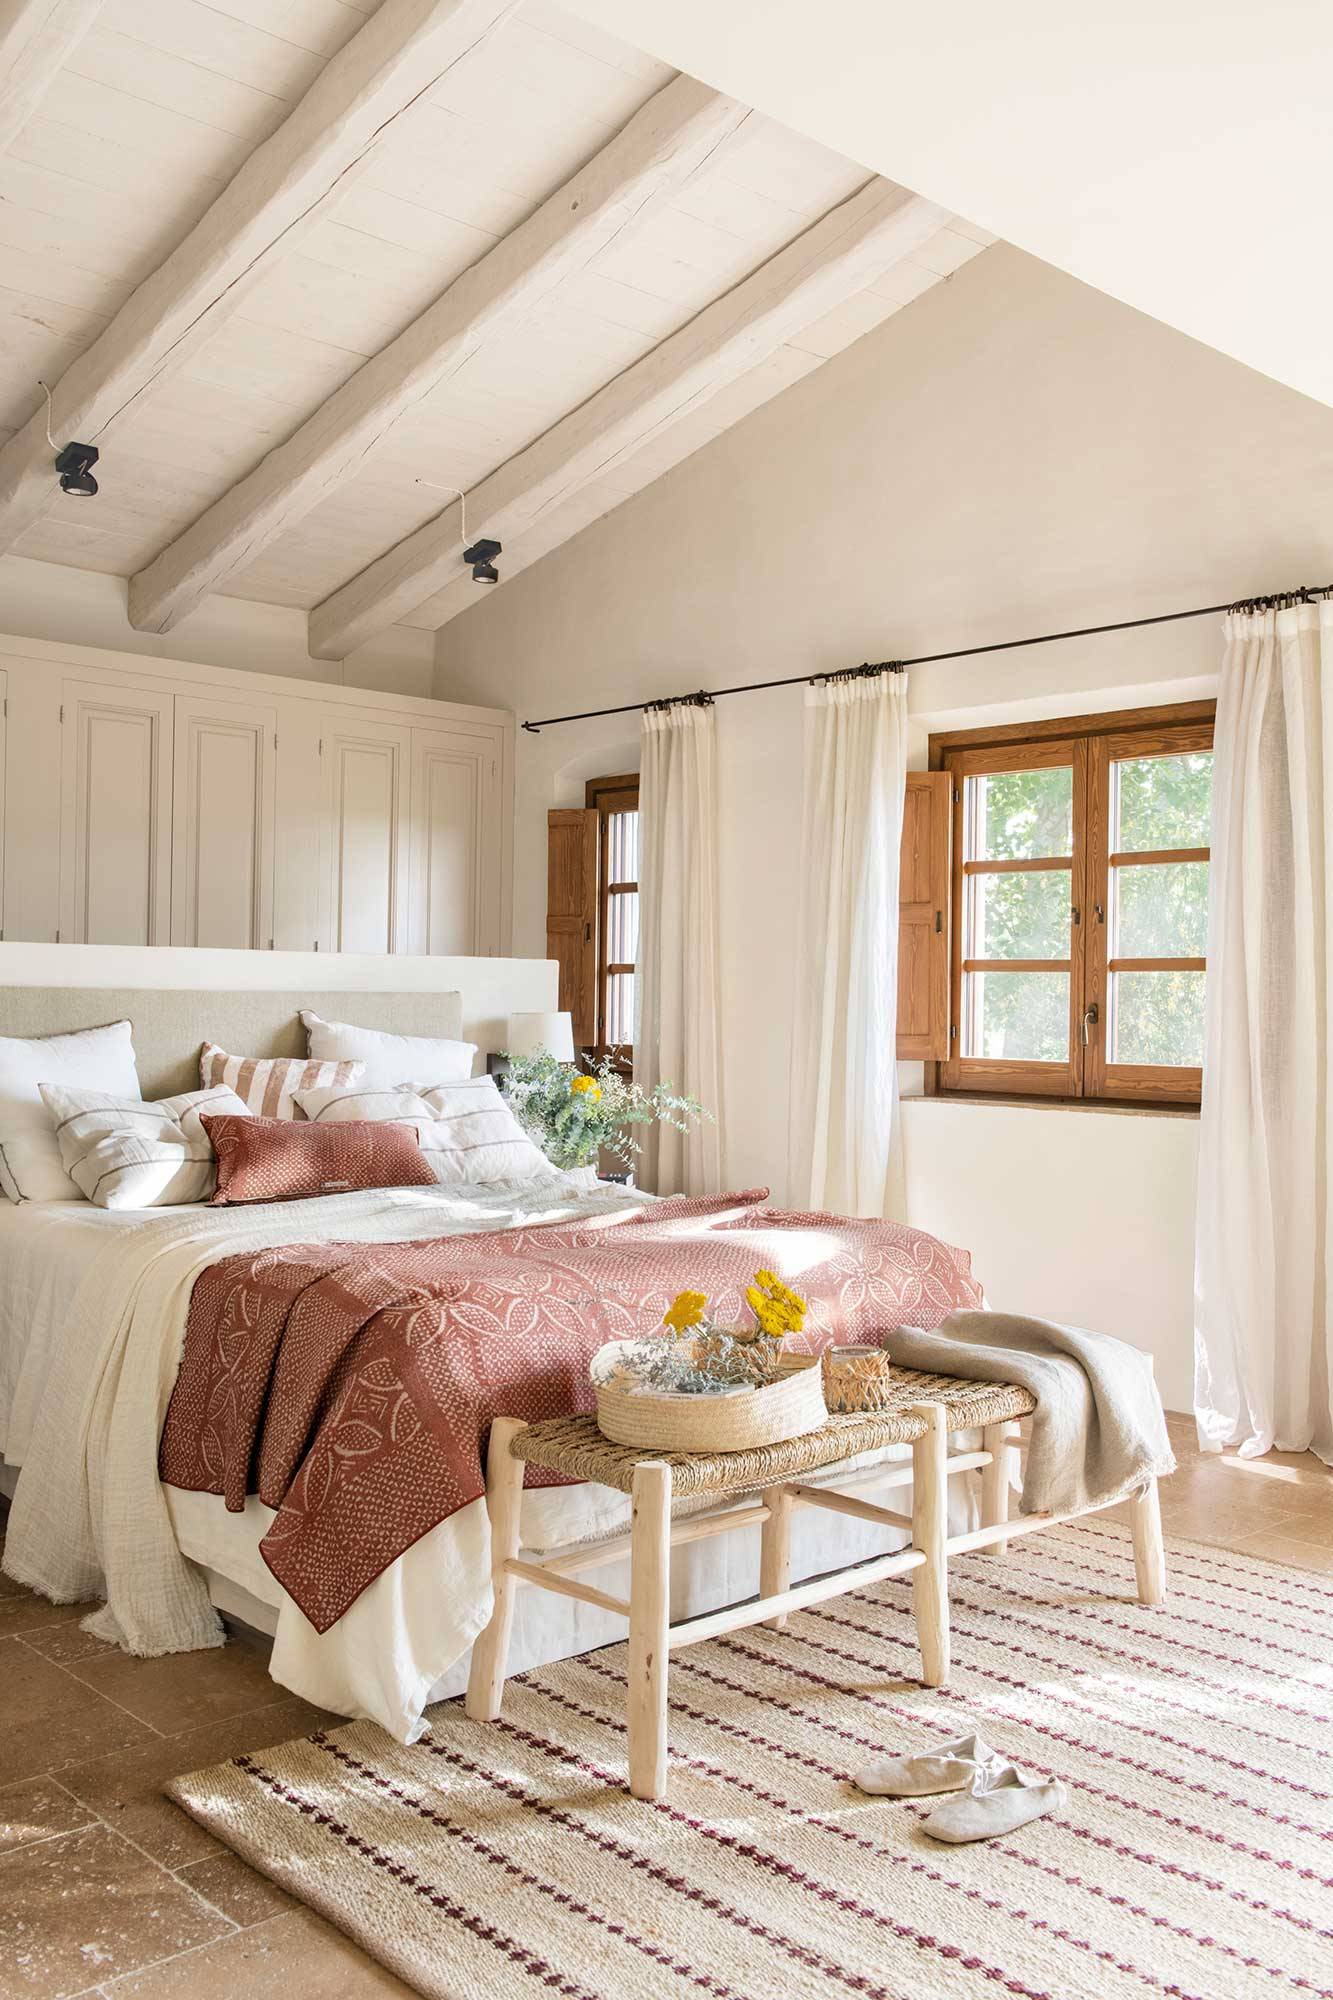 3. Un dormitorio en blanco, rosa y beige